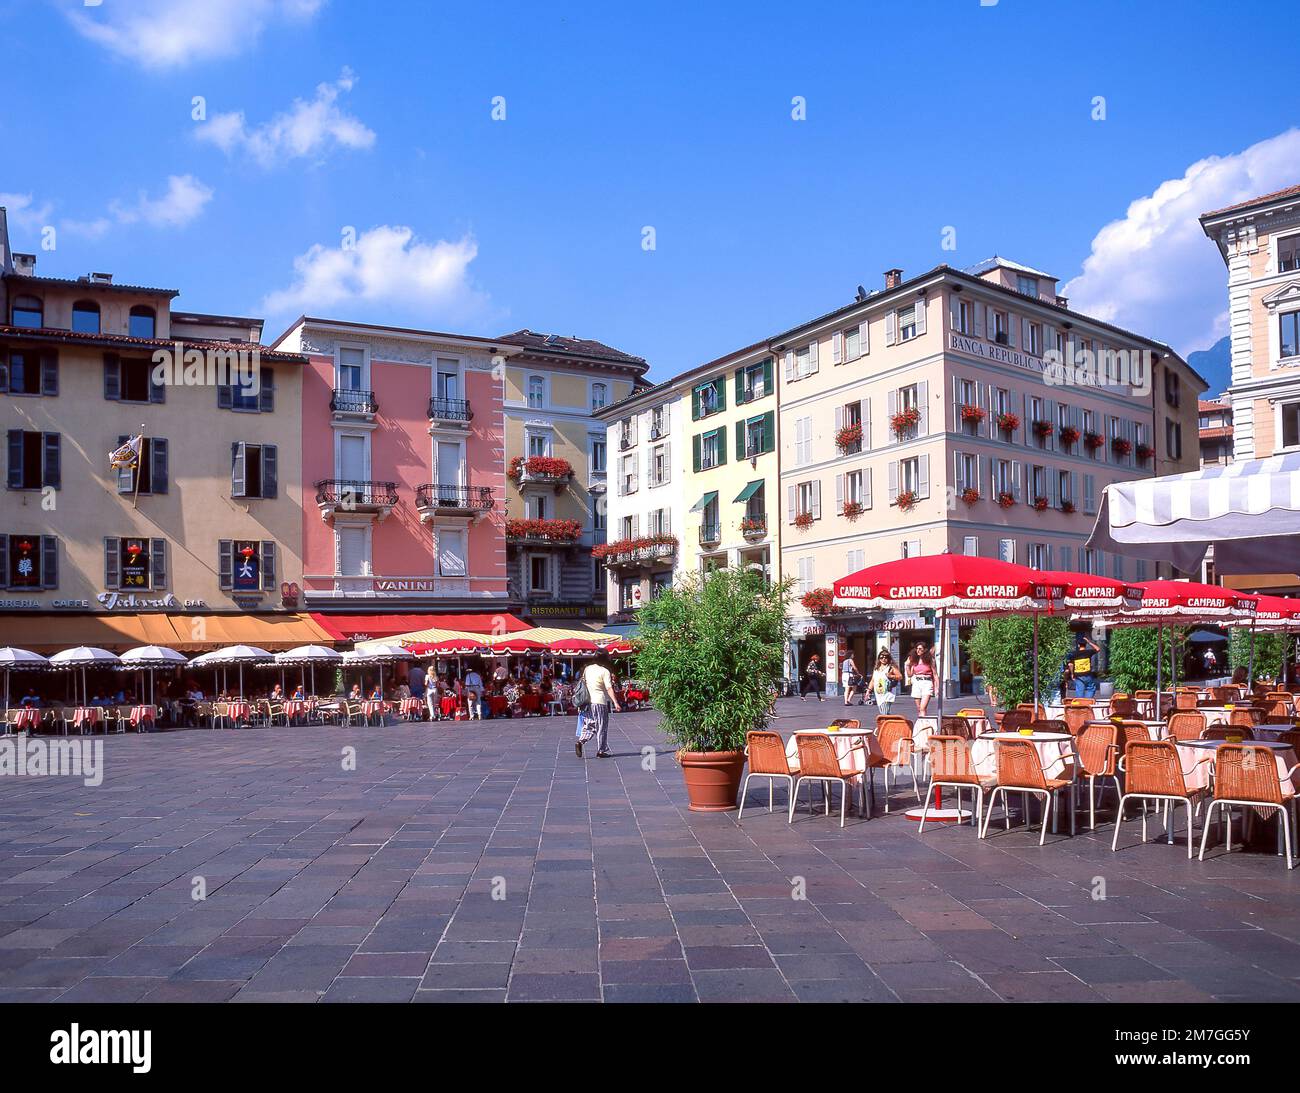 Outdoor restaurants, Piazza Della Reforma, Lugano, Ticino, Switzerland Stock Photo